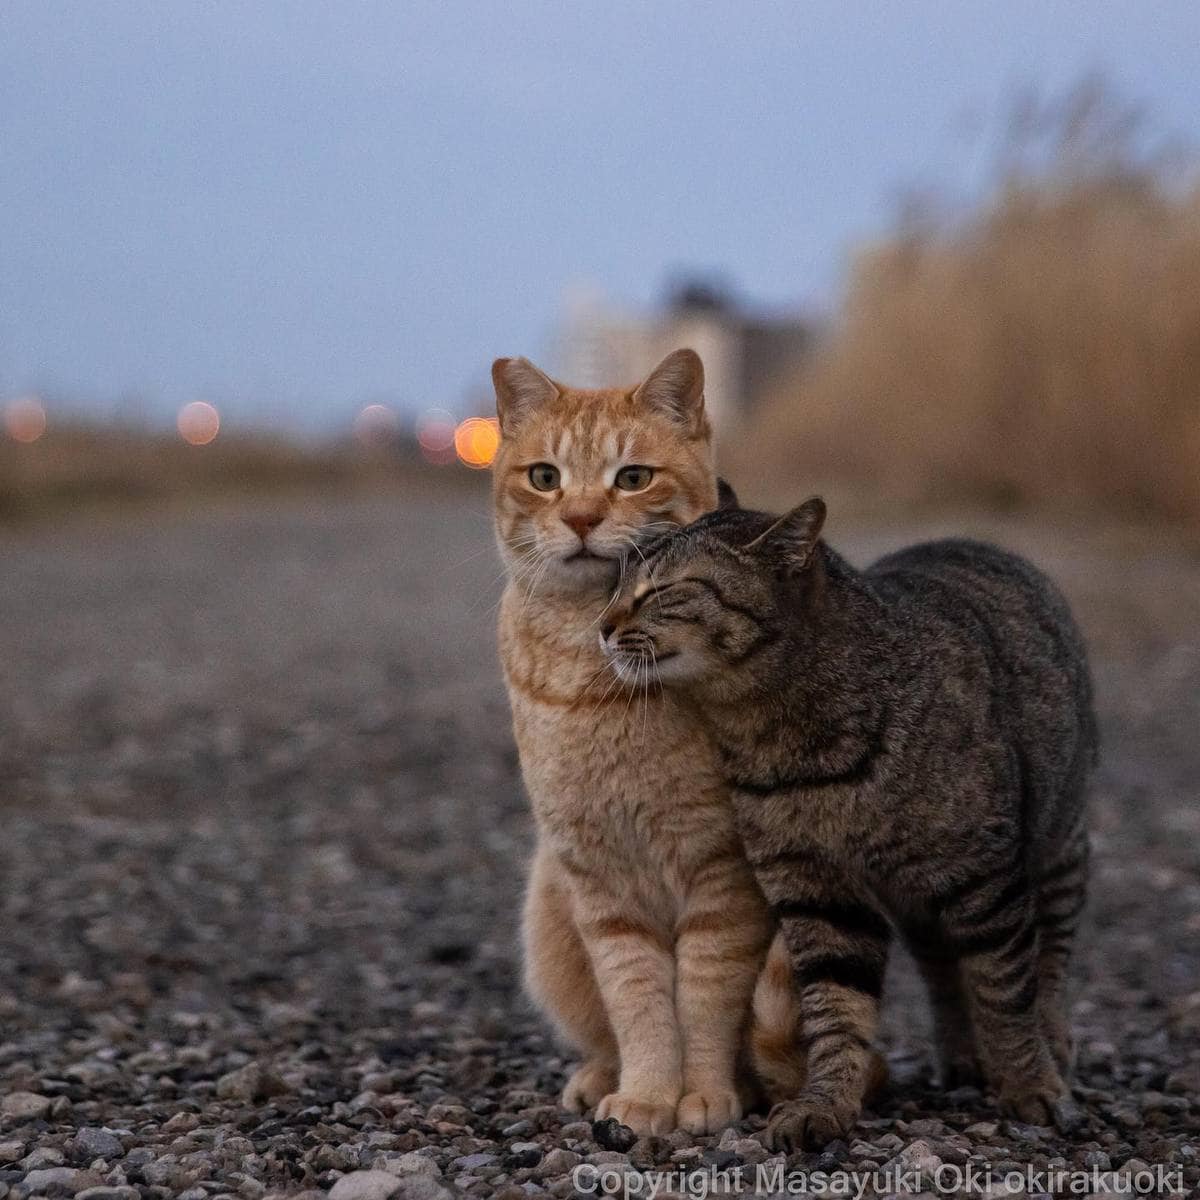 20 снимков уличных котов от японского фотографа, который как никто умеет запечатлевать харизму этих бродяг 73